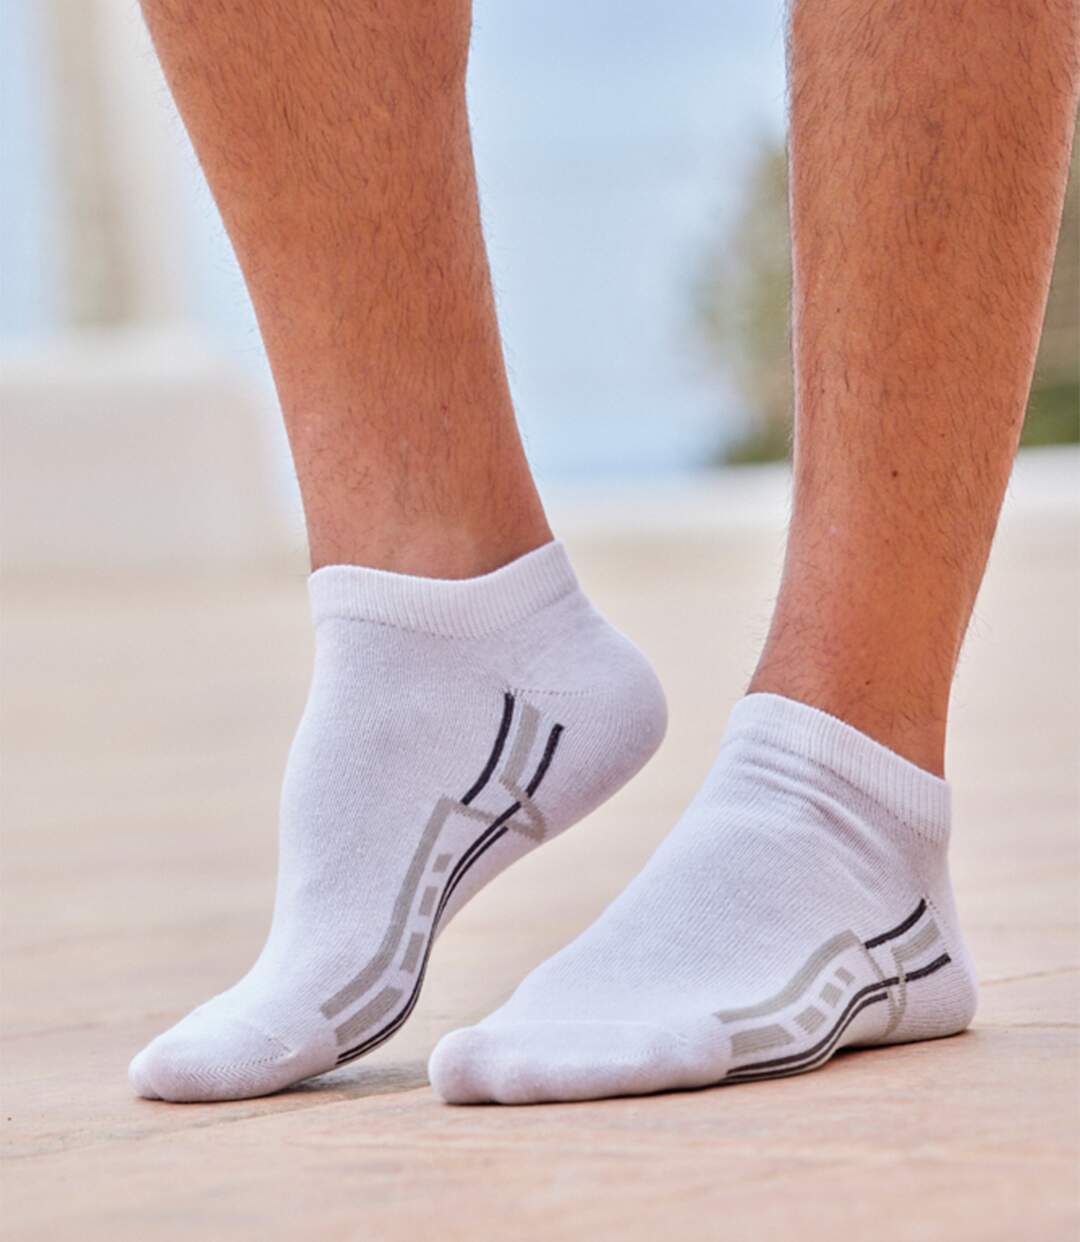 Pack of 4 Pairs of Men's Sneaker Socks - White Mottled Grey Black Atlas For Men